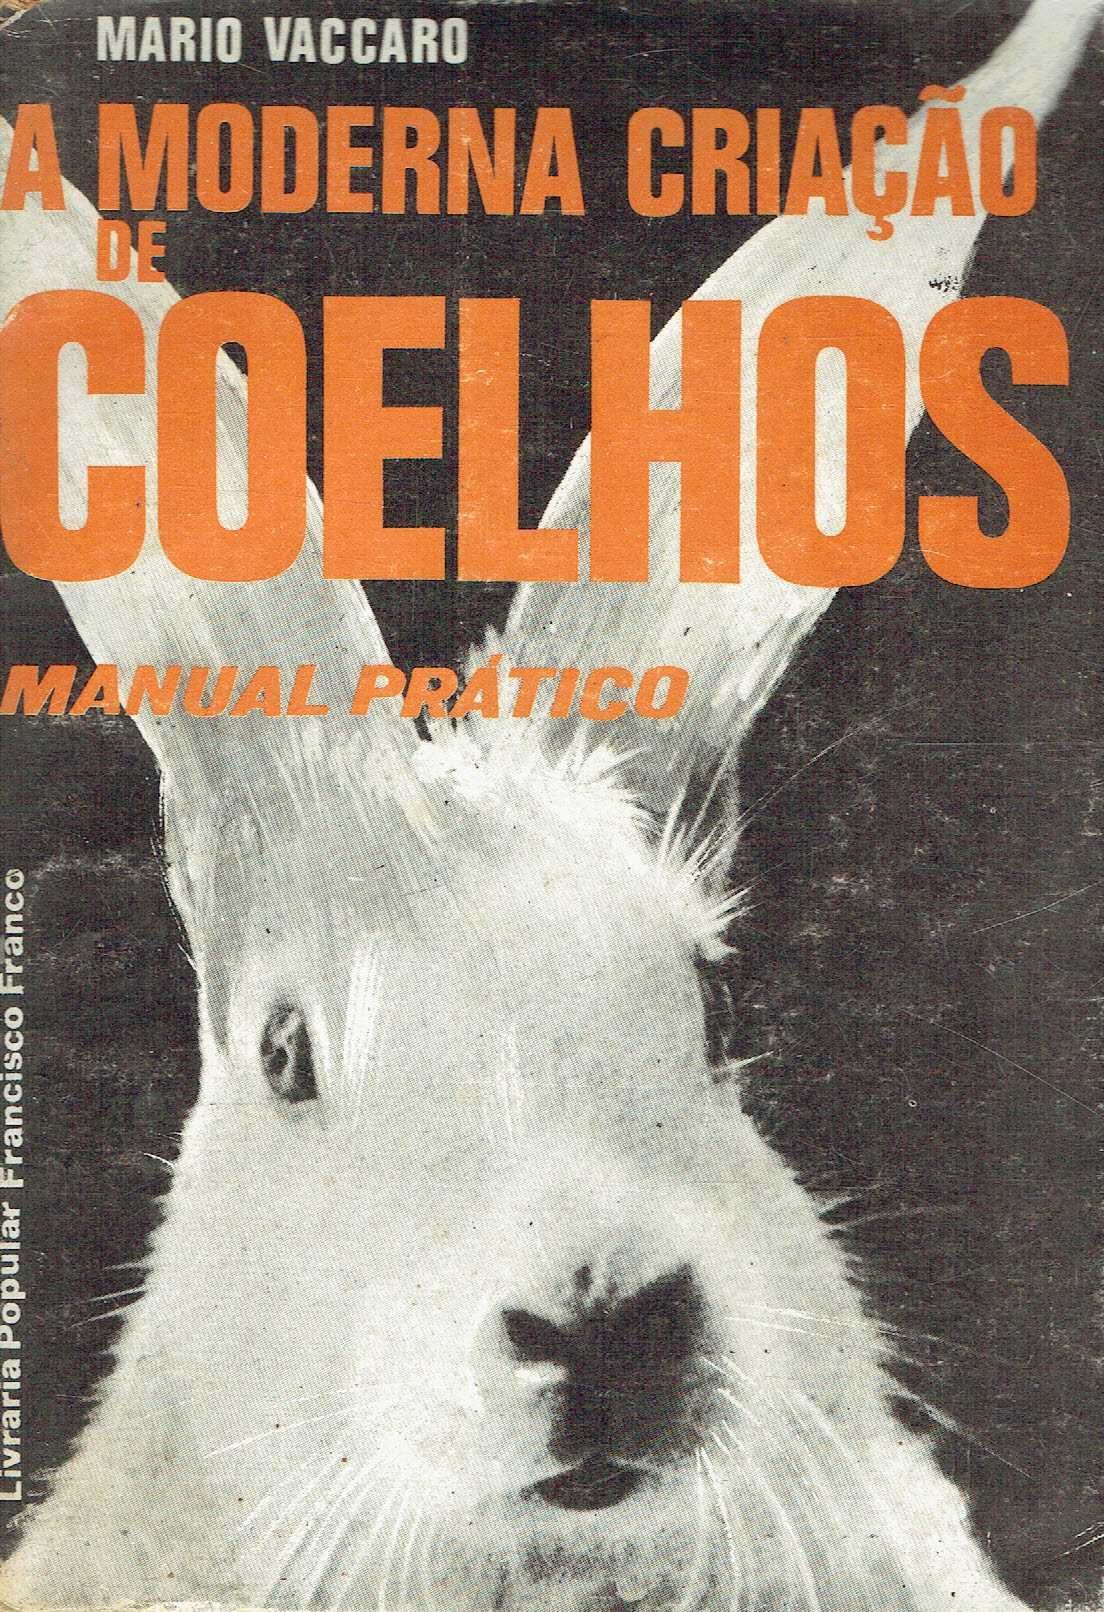 12972
A moderna criação de coelhos : manual prático  
de Mario Vaccaro